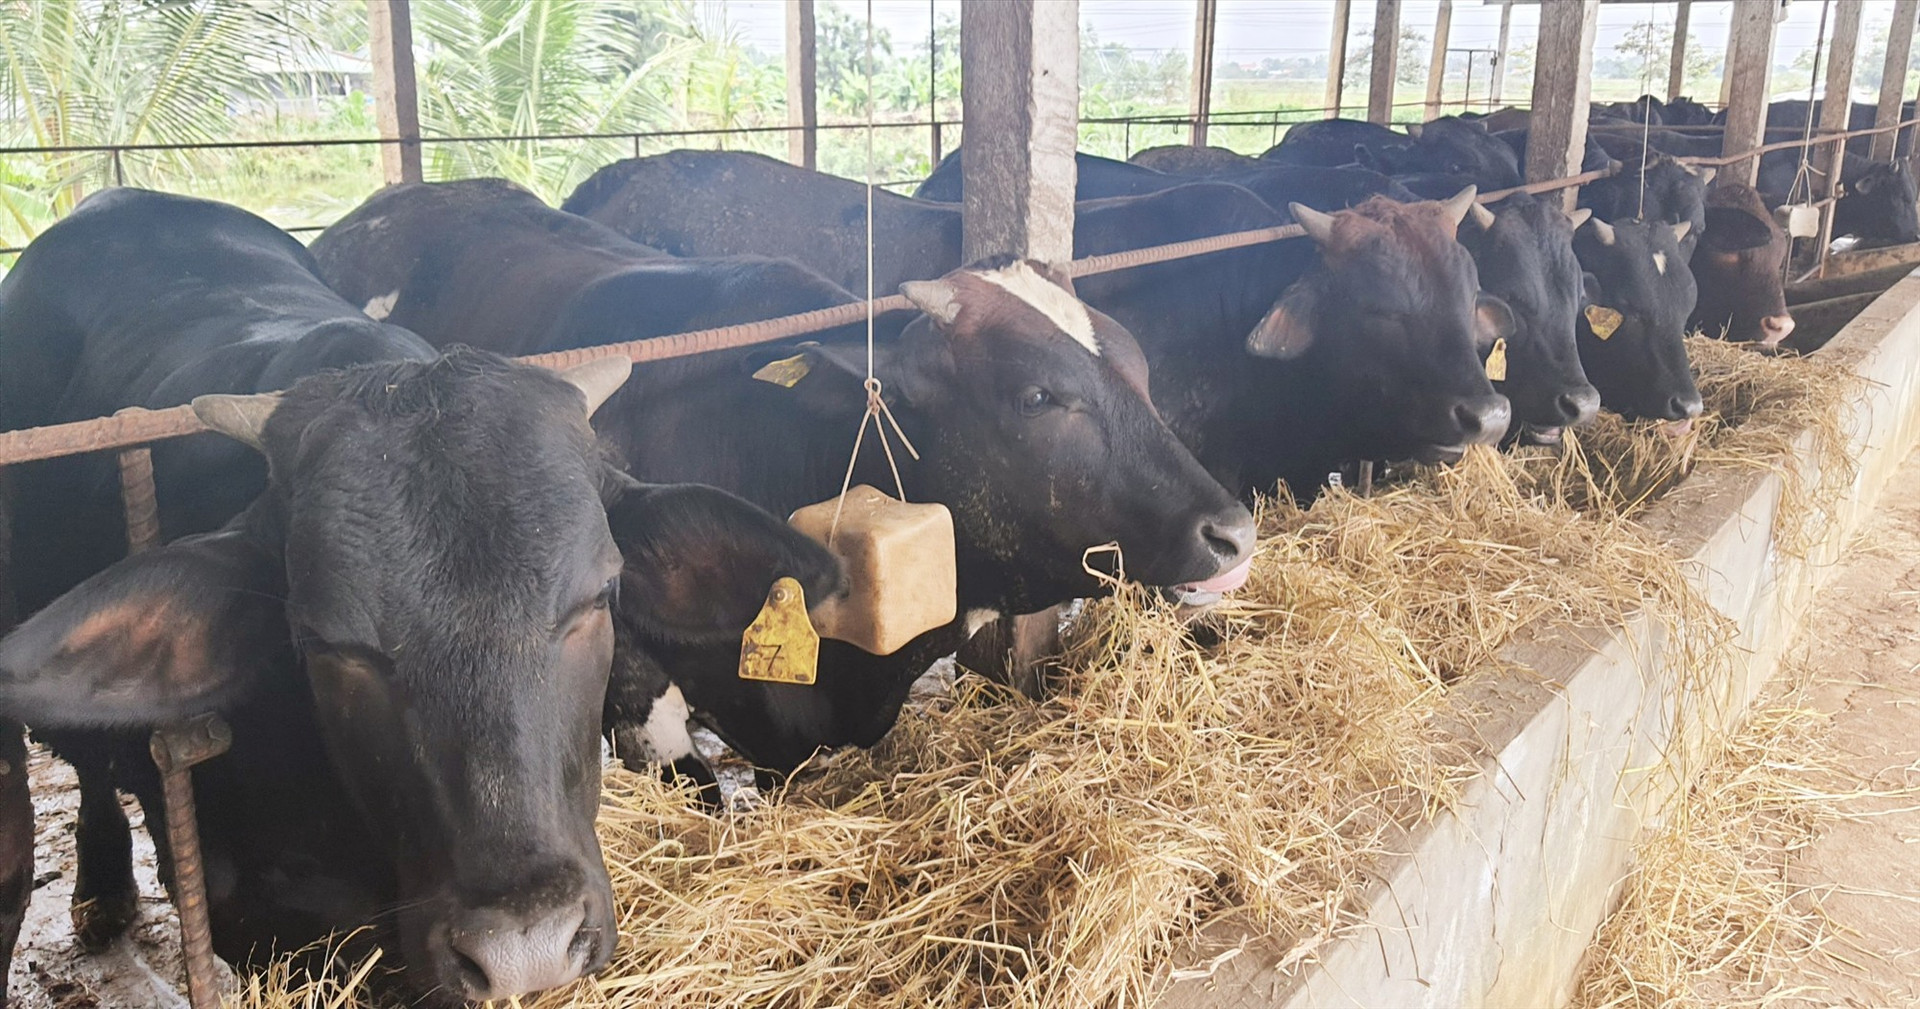 Những năm gần đây, tại Điện Bàn ngày càng xuất hiện nhiều mô hình chăn nuôi bò ngoại 3B với số lượng lớn mang lại hiệu quả kinh tế cao.      Ảnh: N.P